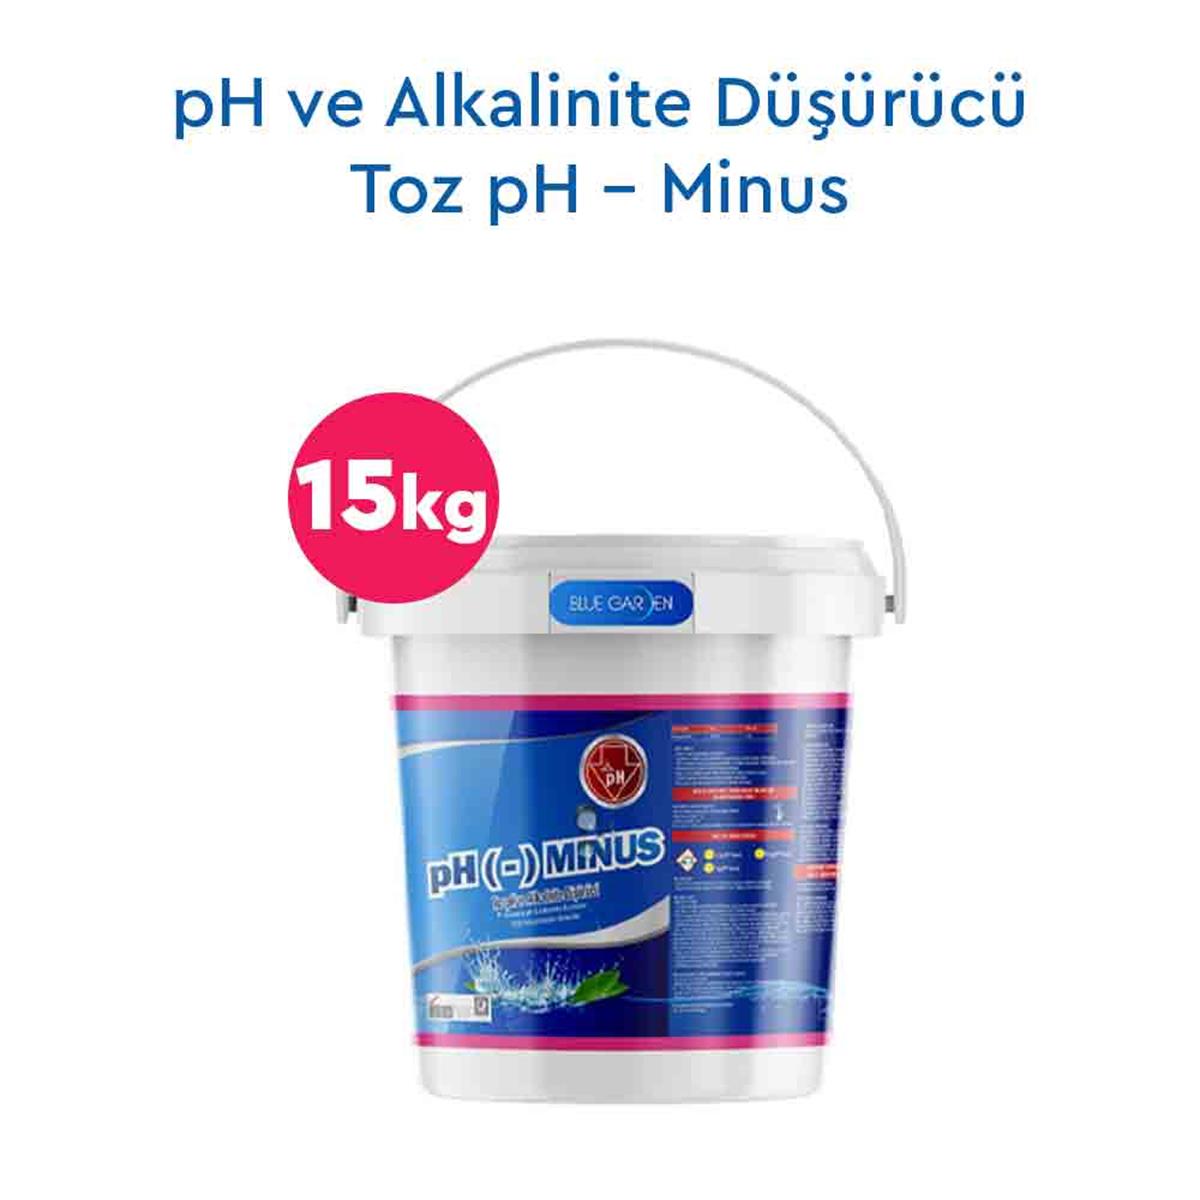 pH ve Alkalinite Düşürücü Toz pH - Minus